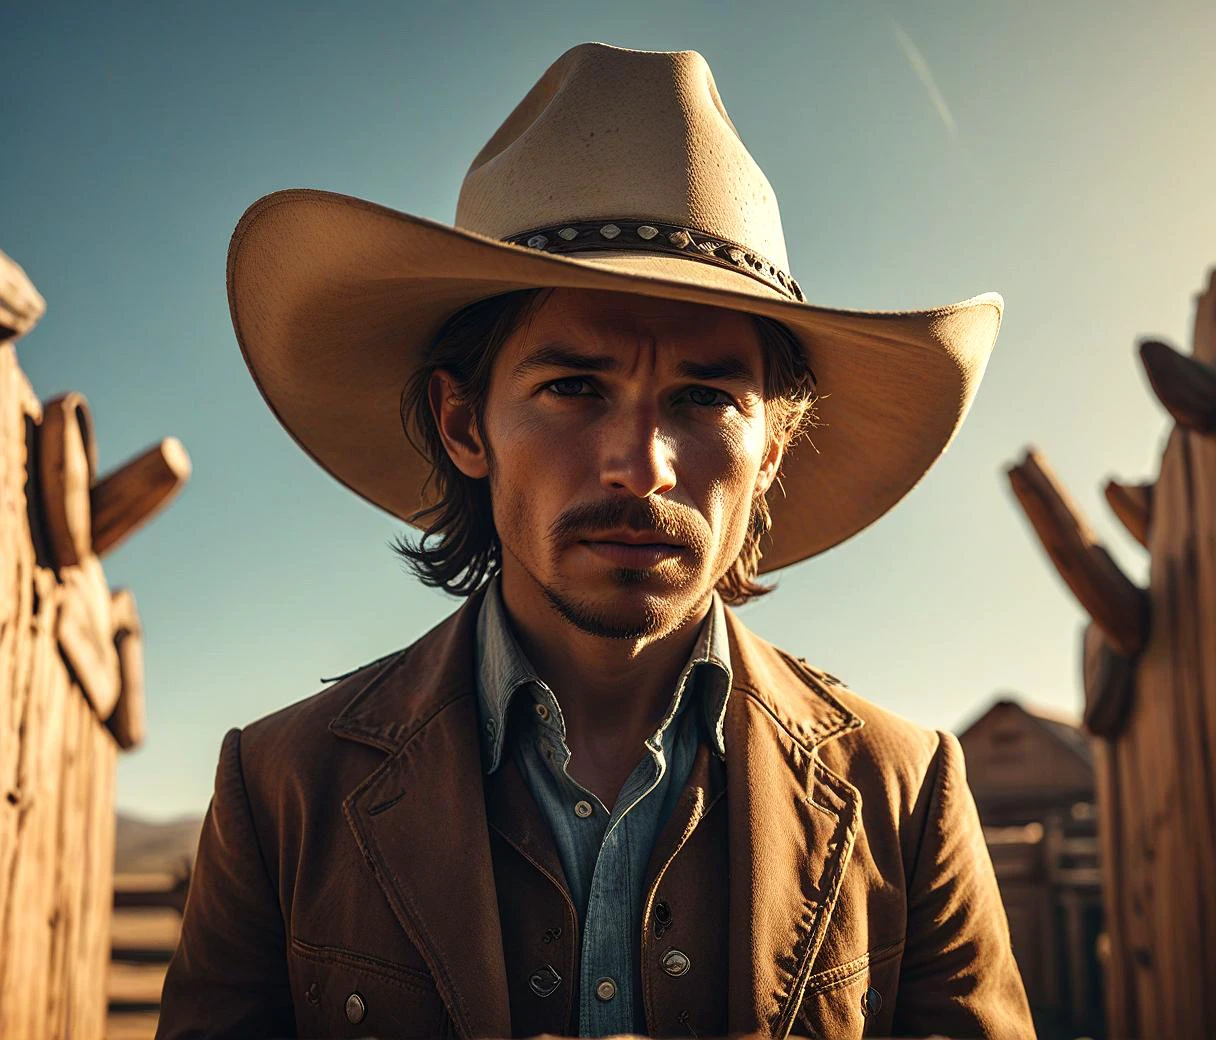 западный стиль, ковбой в шляпе, ранчо как фон, серьезный взгляд, зернистость, яркий, высокий контраст, высшее качество